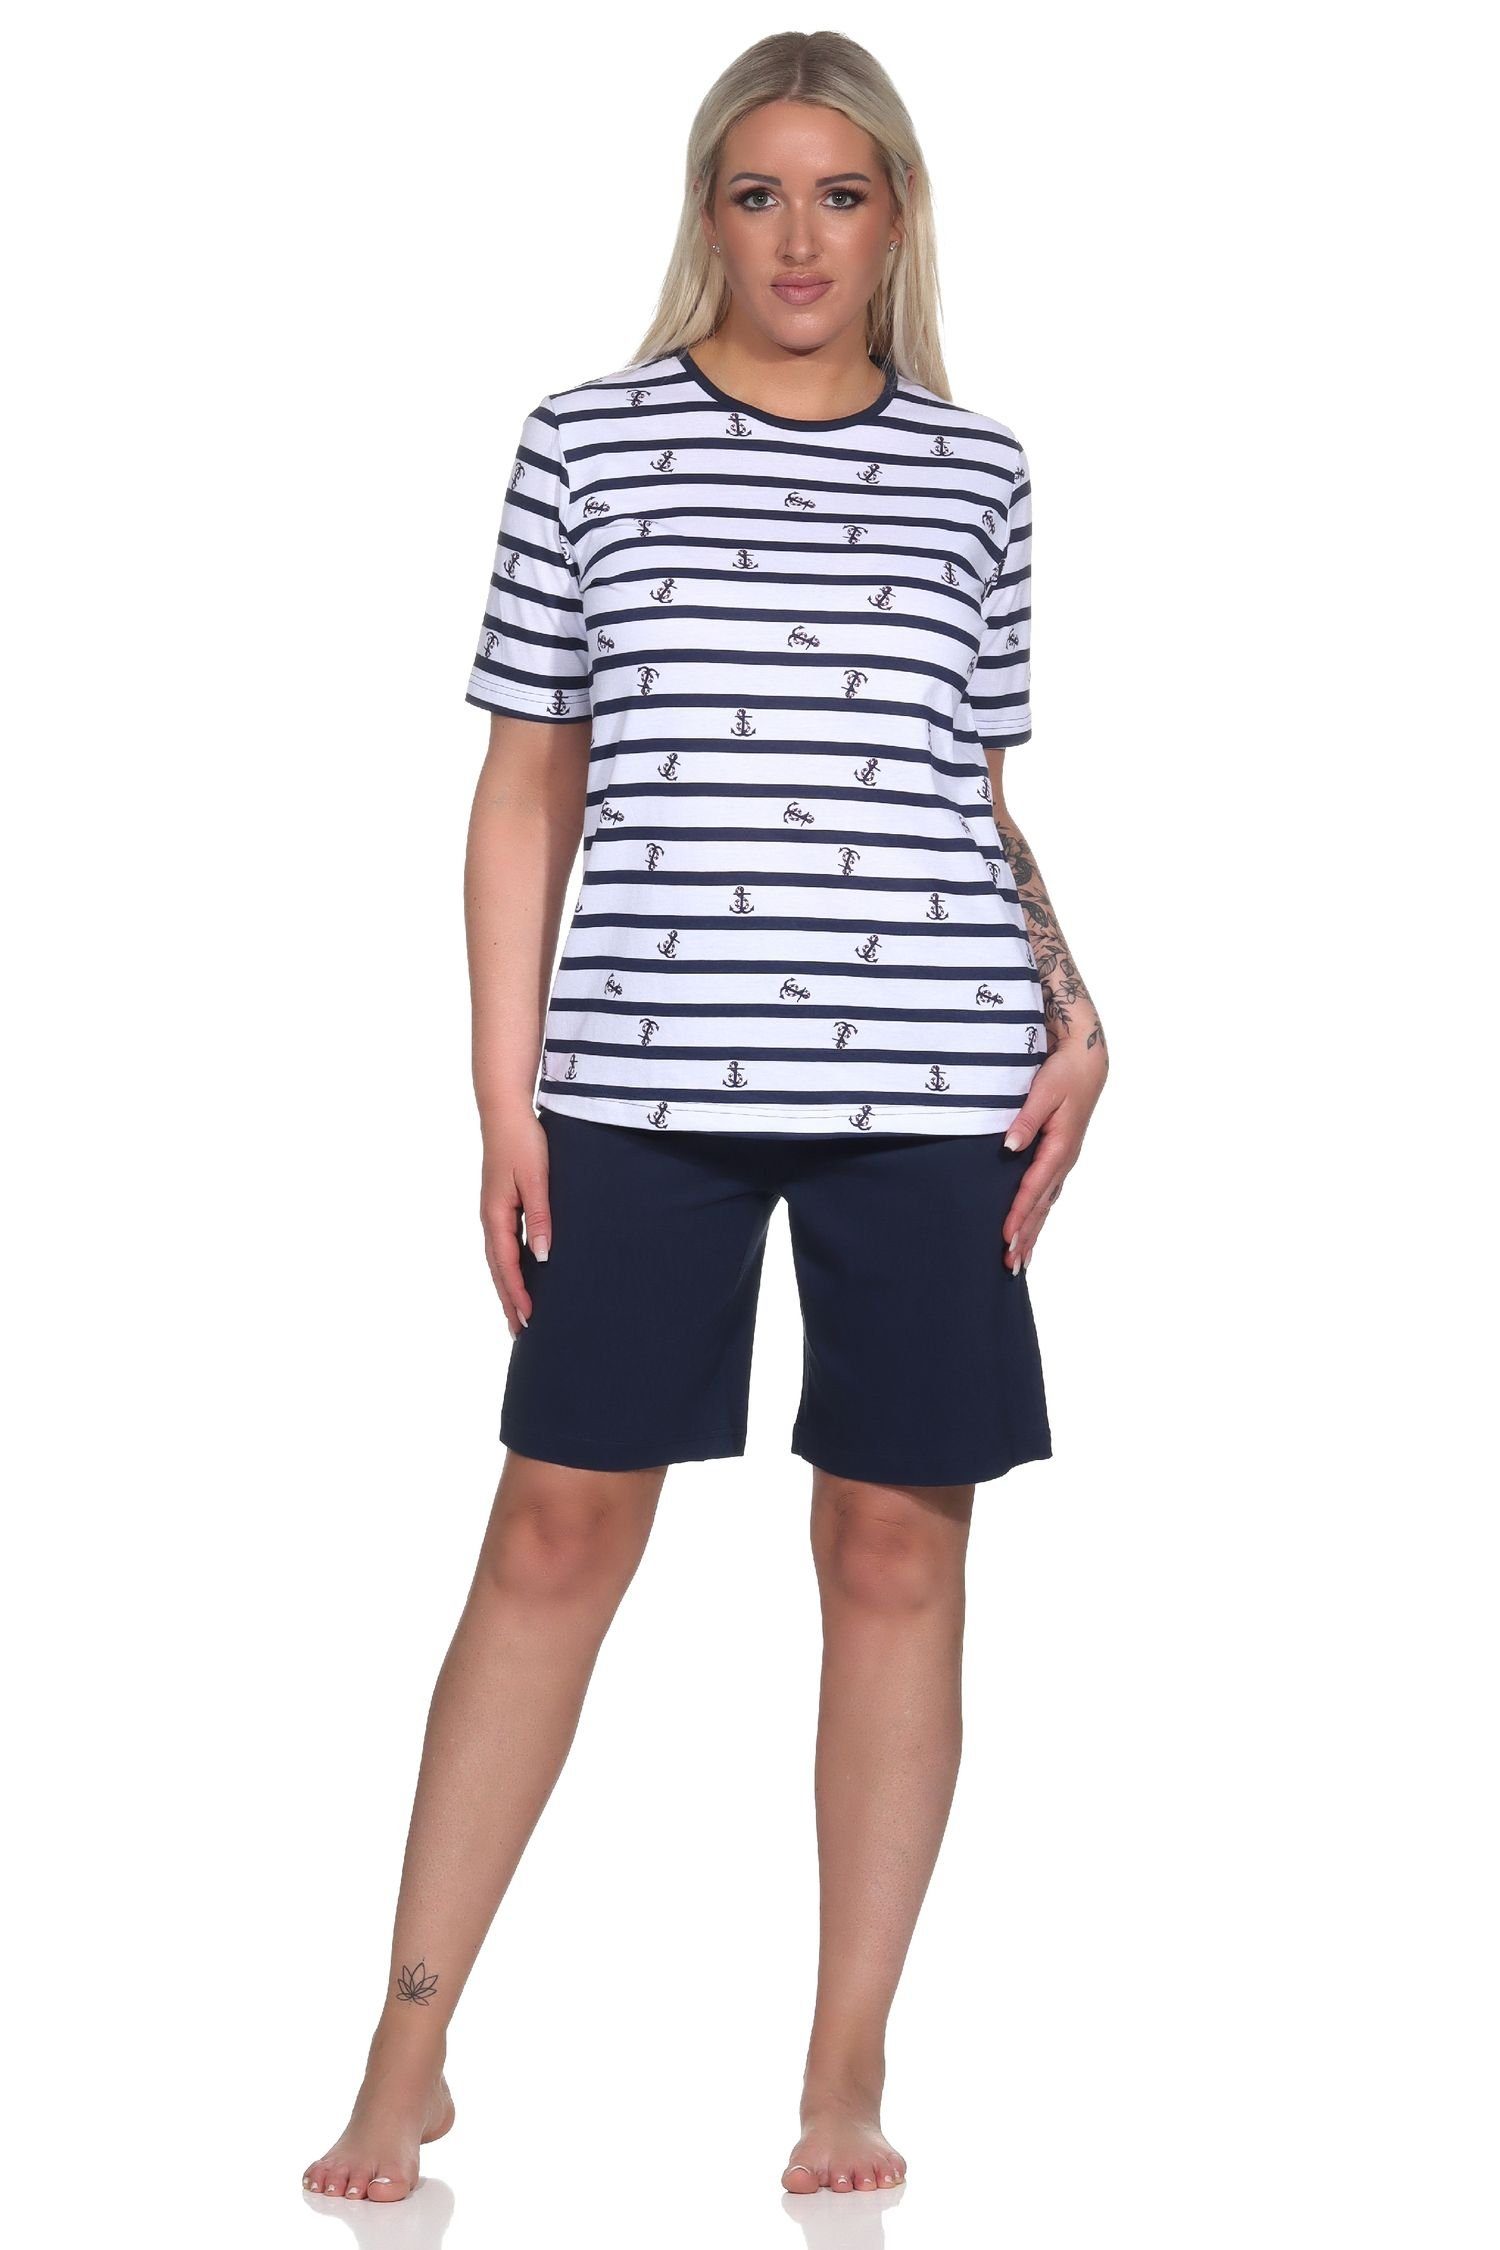 Shorty - in Pyjama maritime Damen Übergrößen Optik Schlafanzug auch marine kurzarm Normann